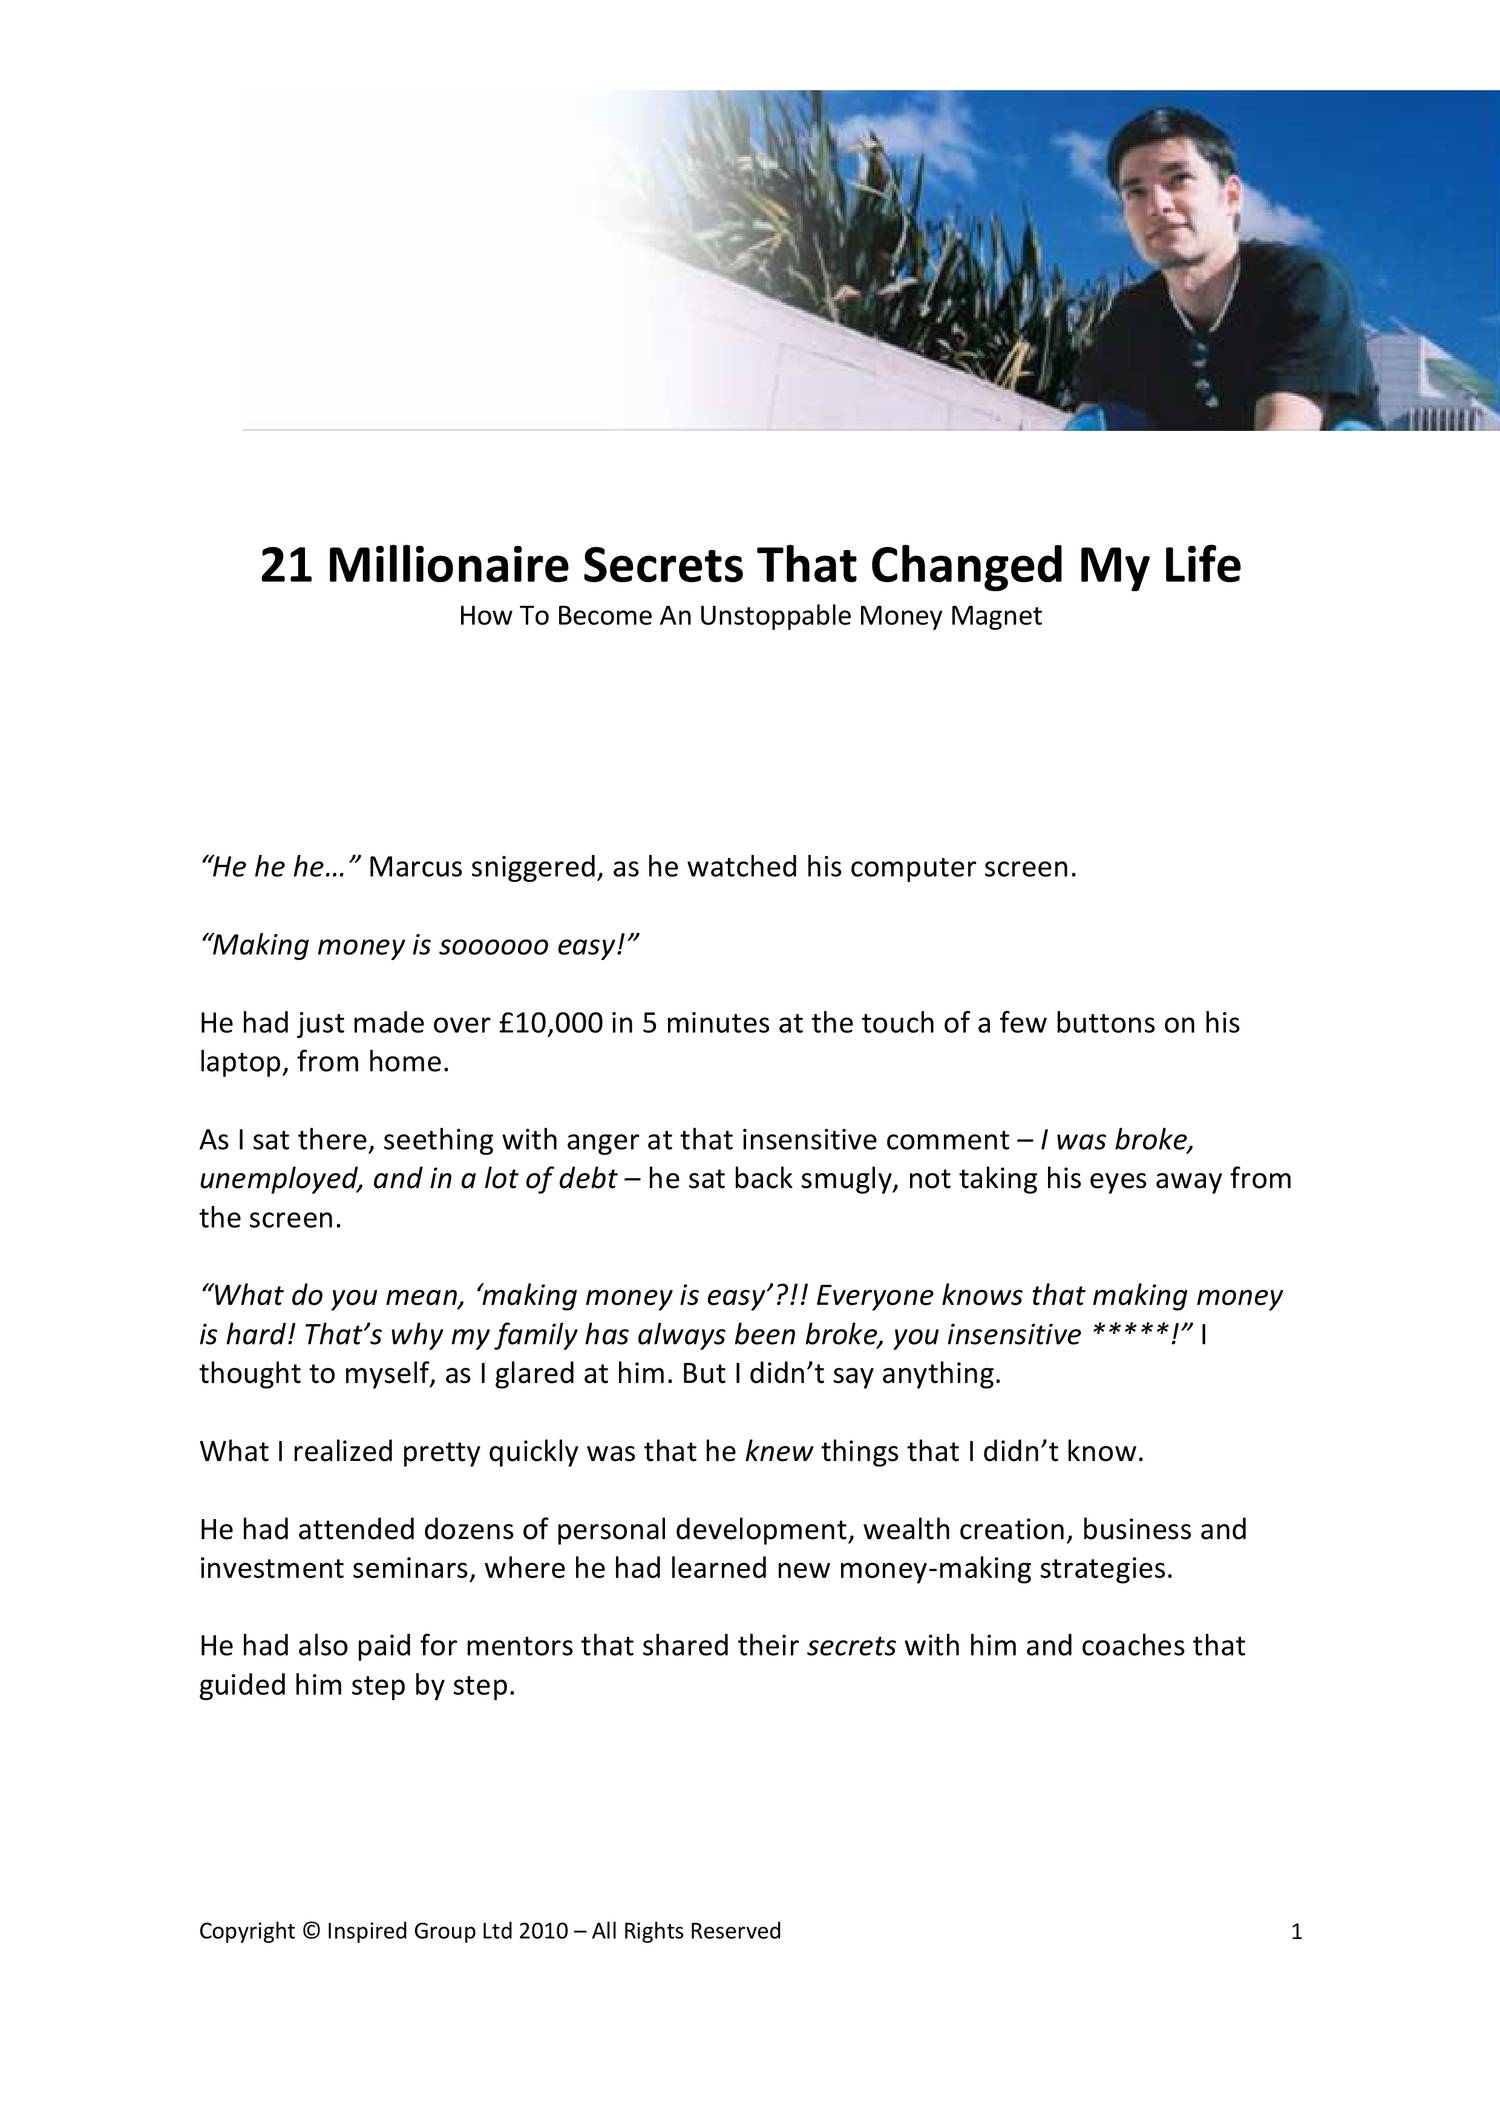 Shocking Millionaire Secrets Revealed! (Build Wealth Like the 1%) - YouTube